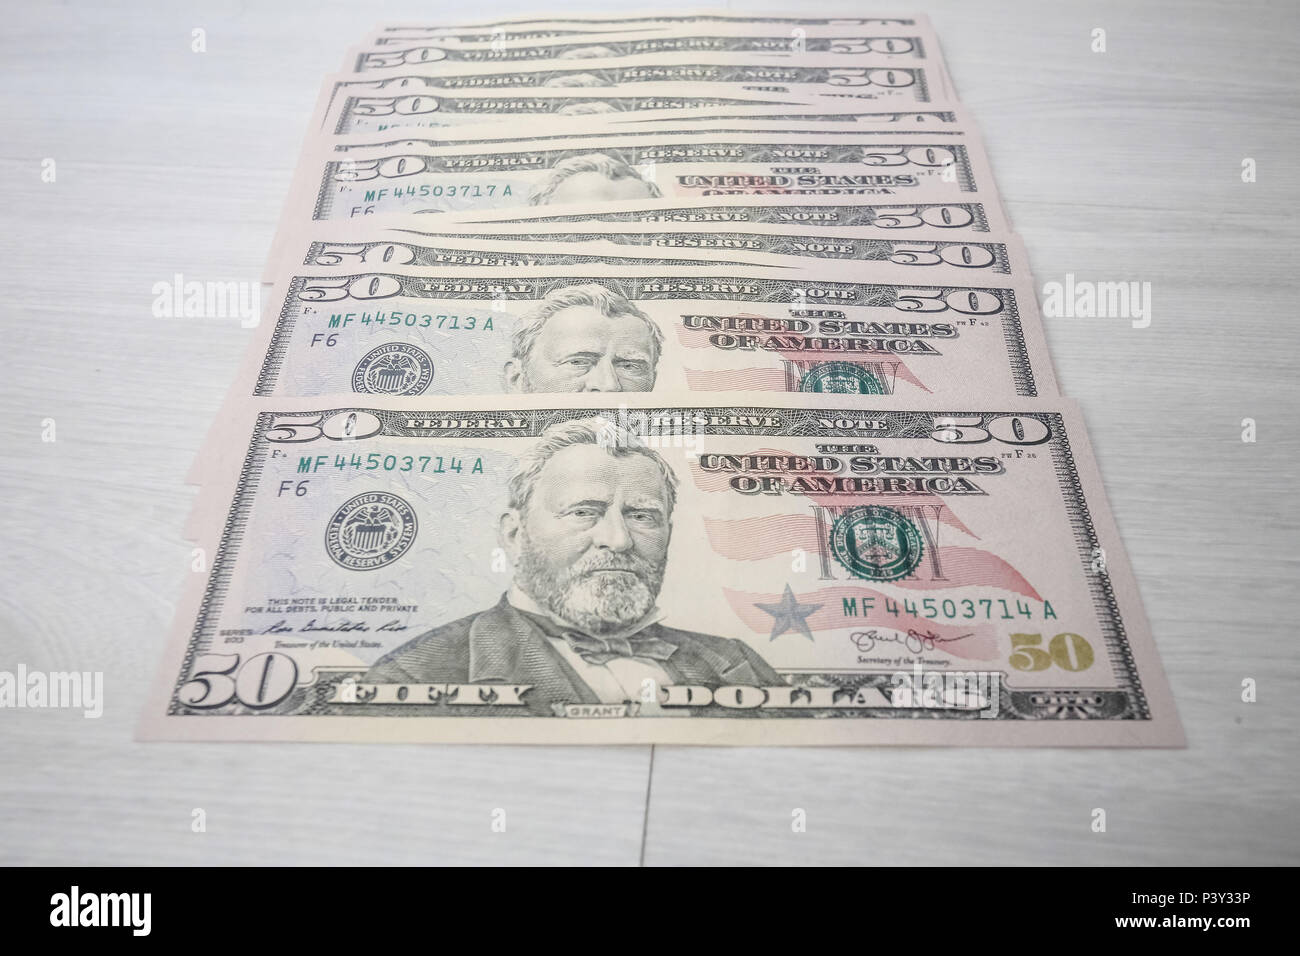 O dólar americano é a moeda emitida pelos Estados Unidos e tem sua emissão controlada pela Reserva Federal daquele país. O dólar é usado tanto em reservas internacionais como em livre circulação. Stock Photo